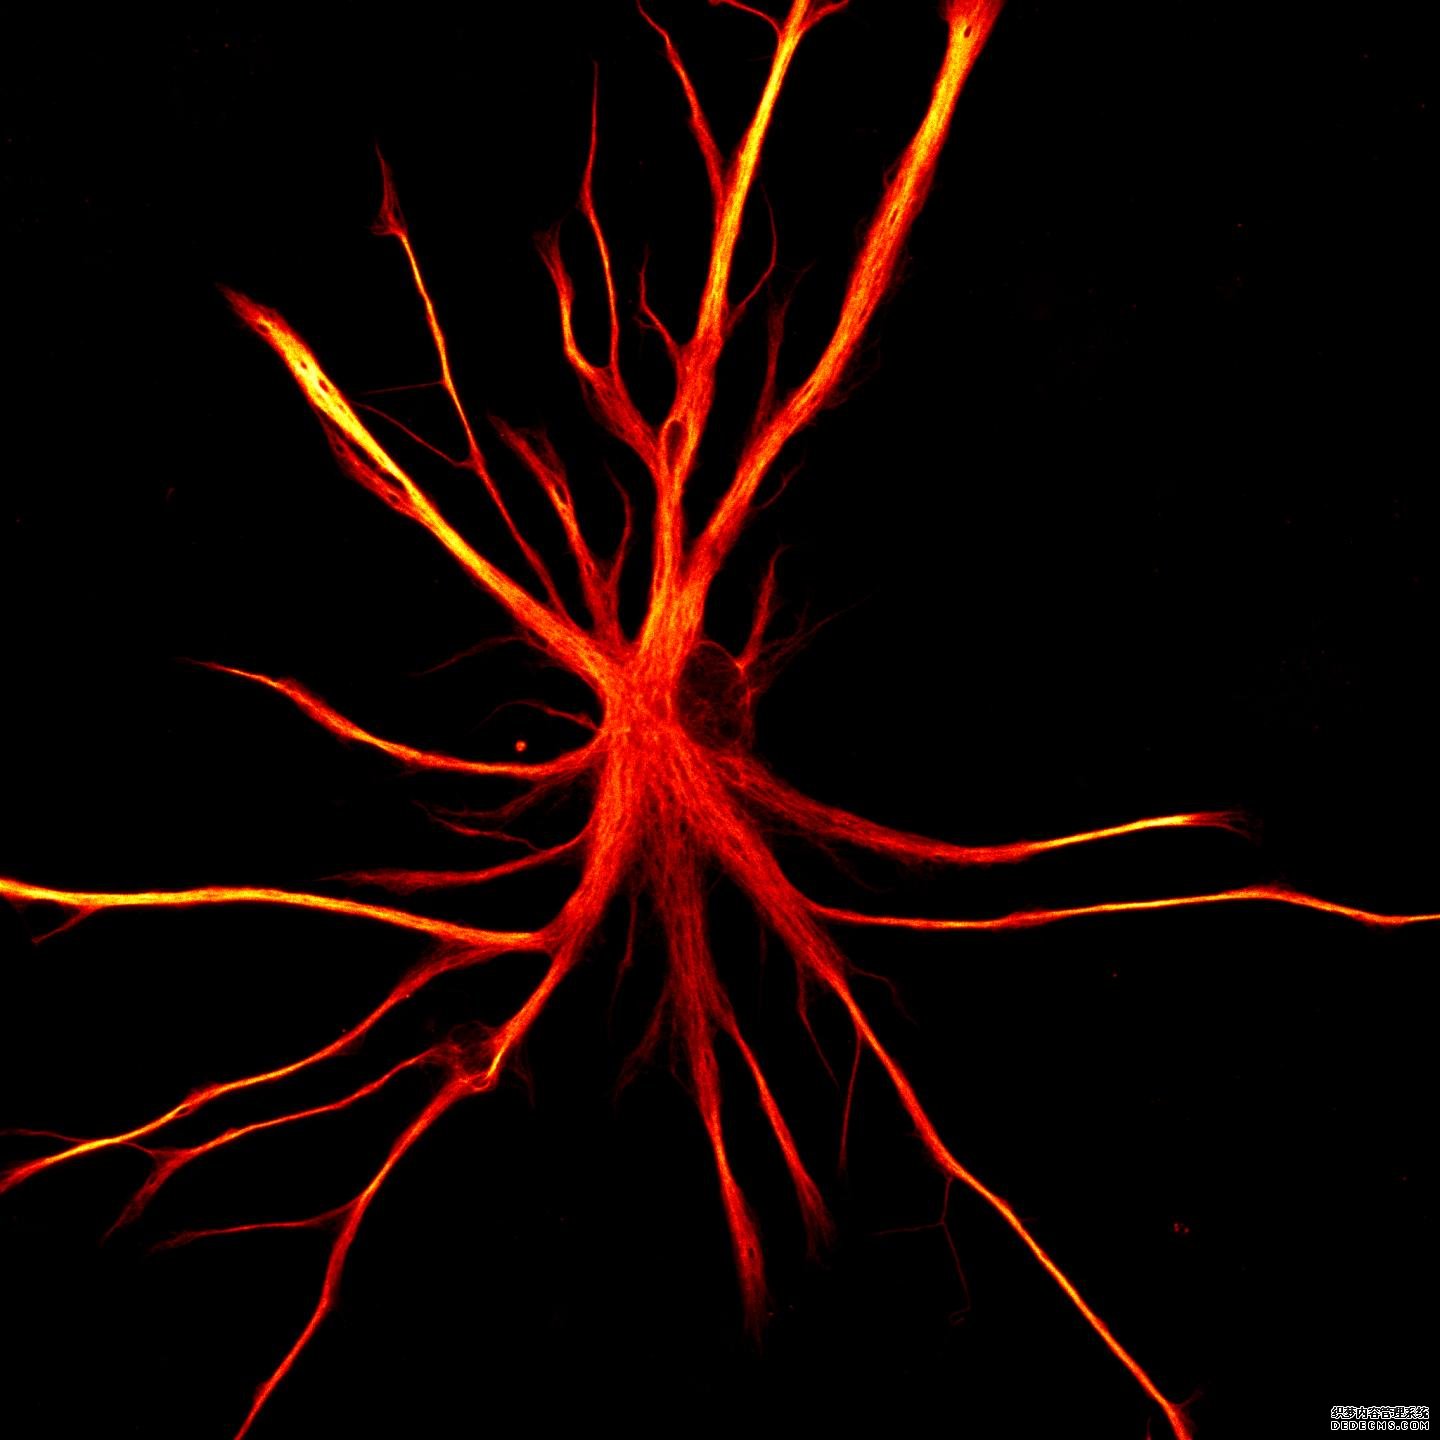 当星形胶质细胞攻击:杏耀注册帐号干细胞模型显示了神经退行性变的可能机制